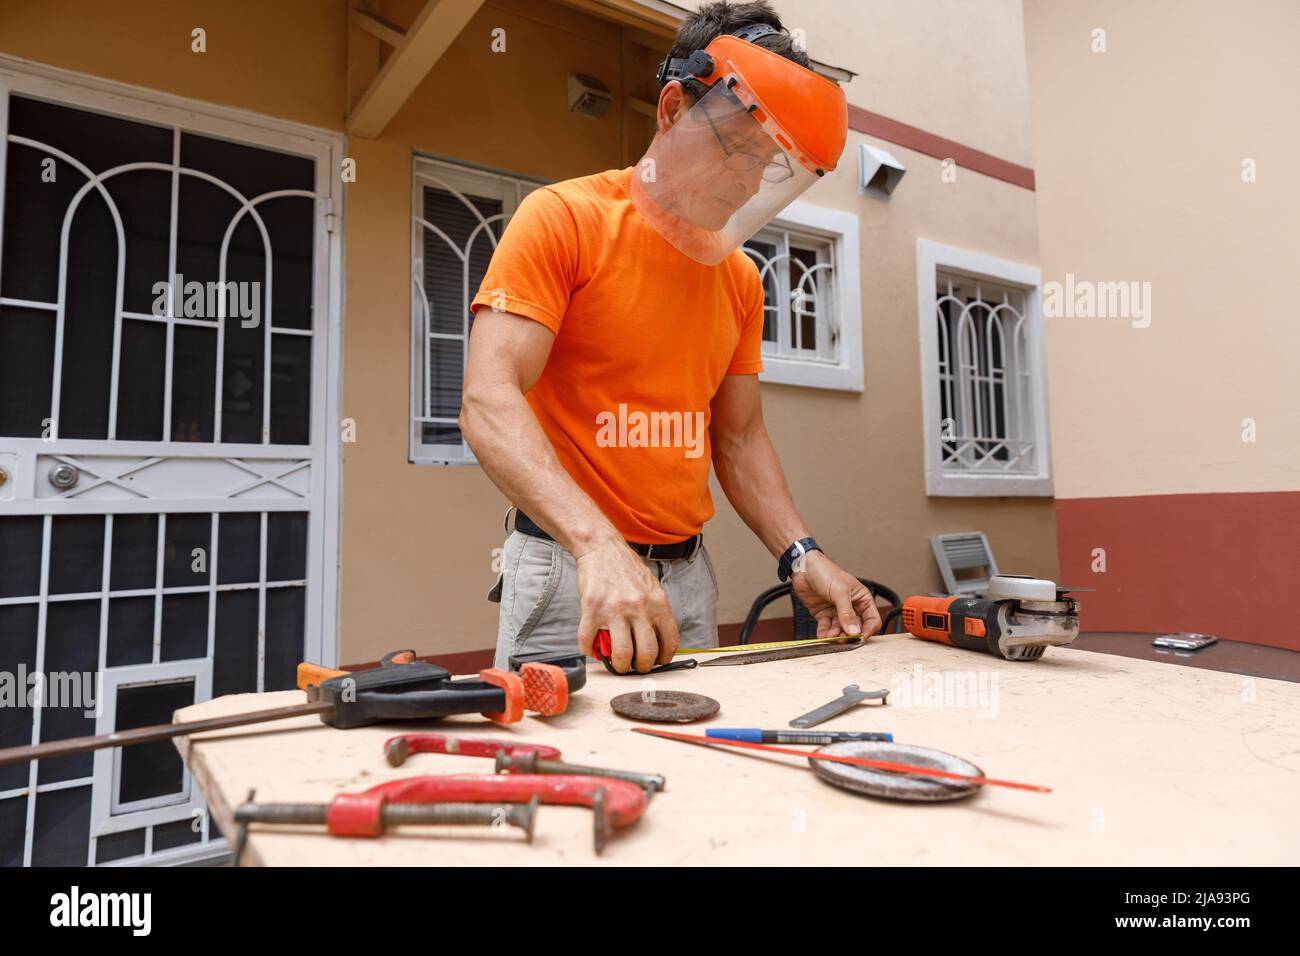 Ein Mann in seinem Hof beschäftigt sich mit Schlosserarbeiten. Hobby, in einer Hauswerkstatt. Stockfoto